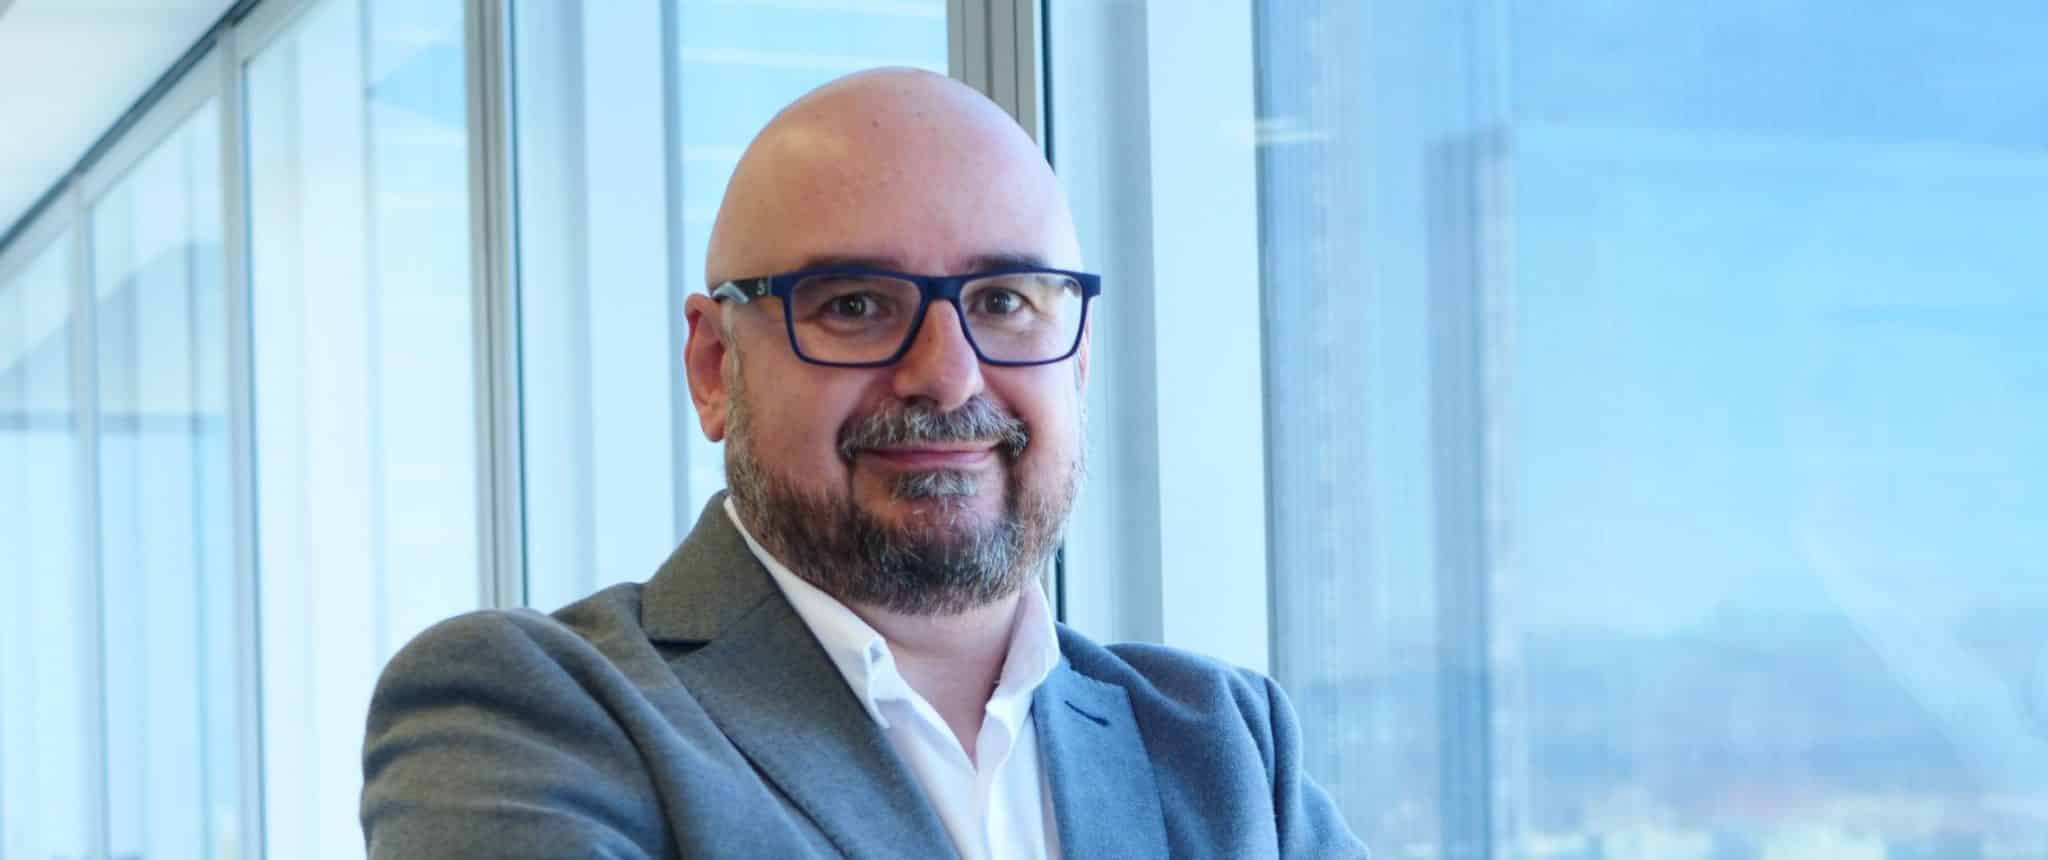 David Sánchez, Account Manager para Gobierno Central de Trend Micro